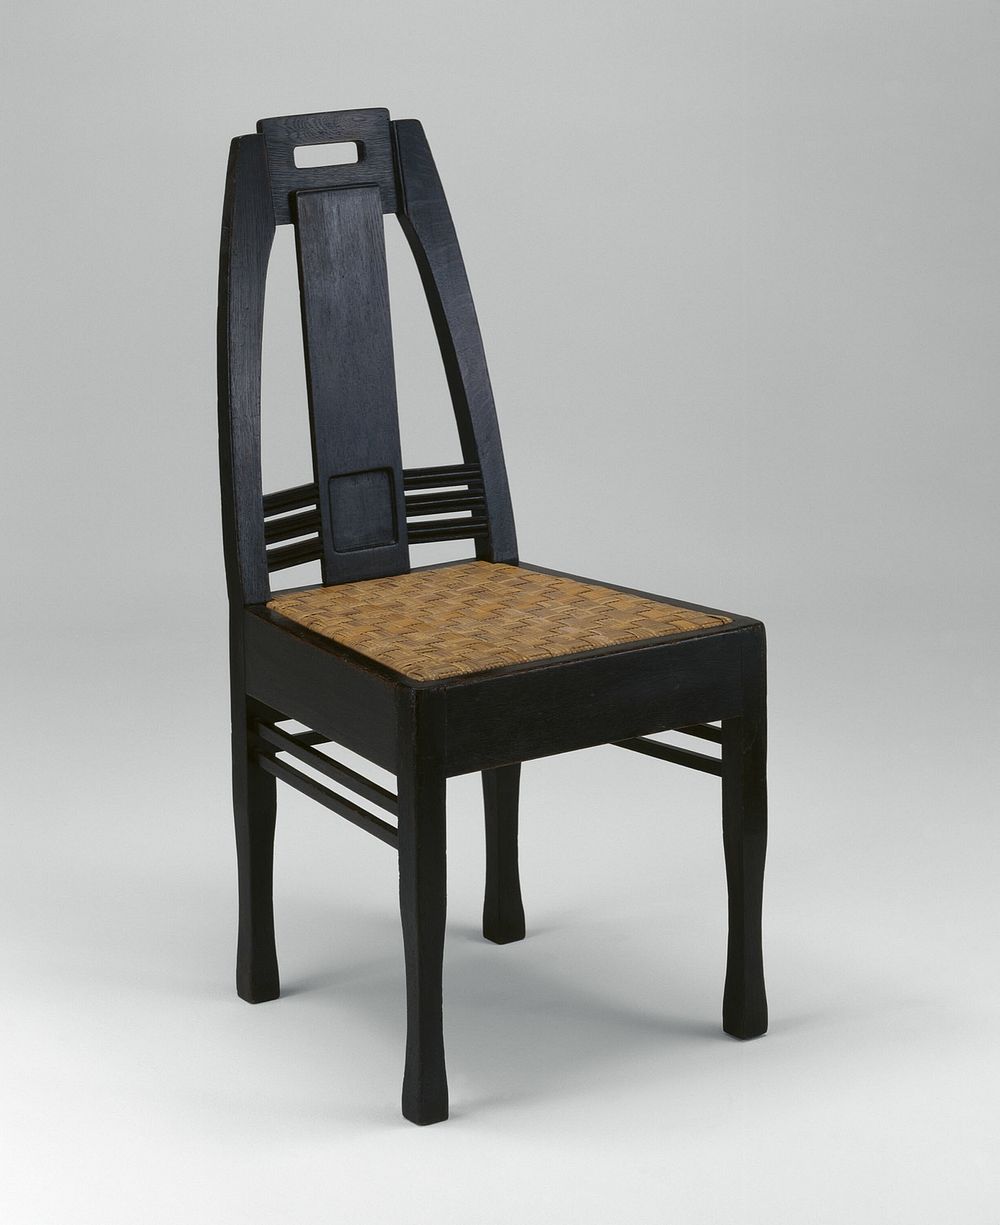 Chair by Peter Behrens (Designer)